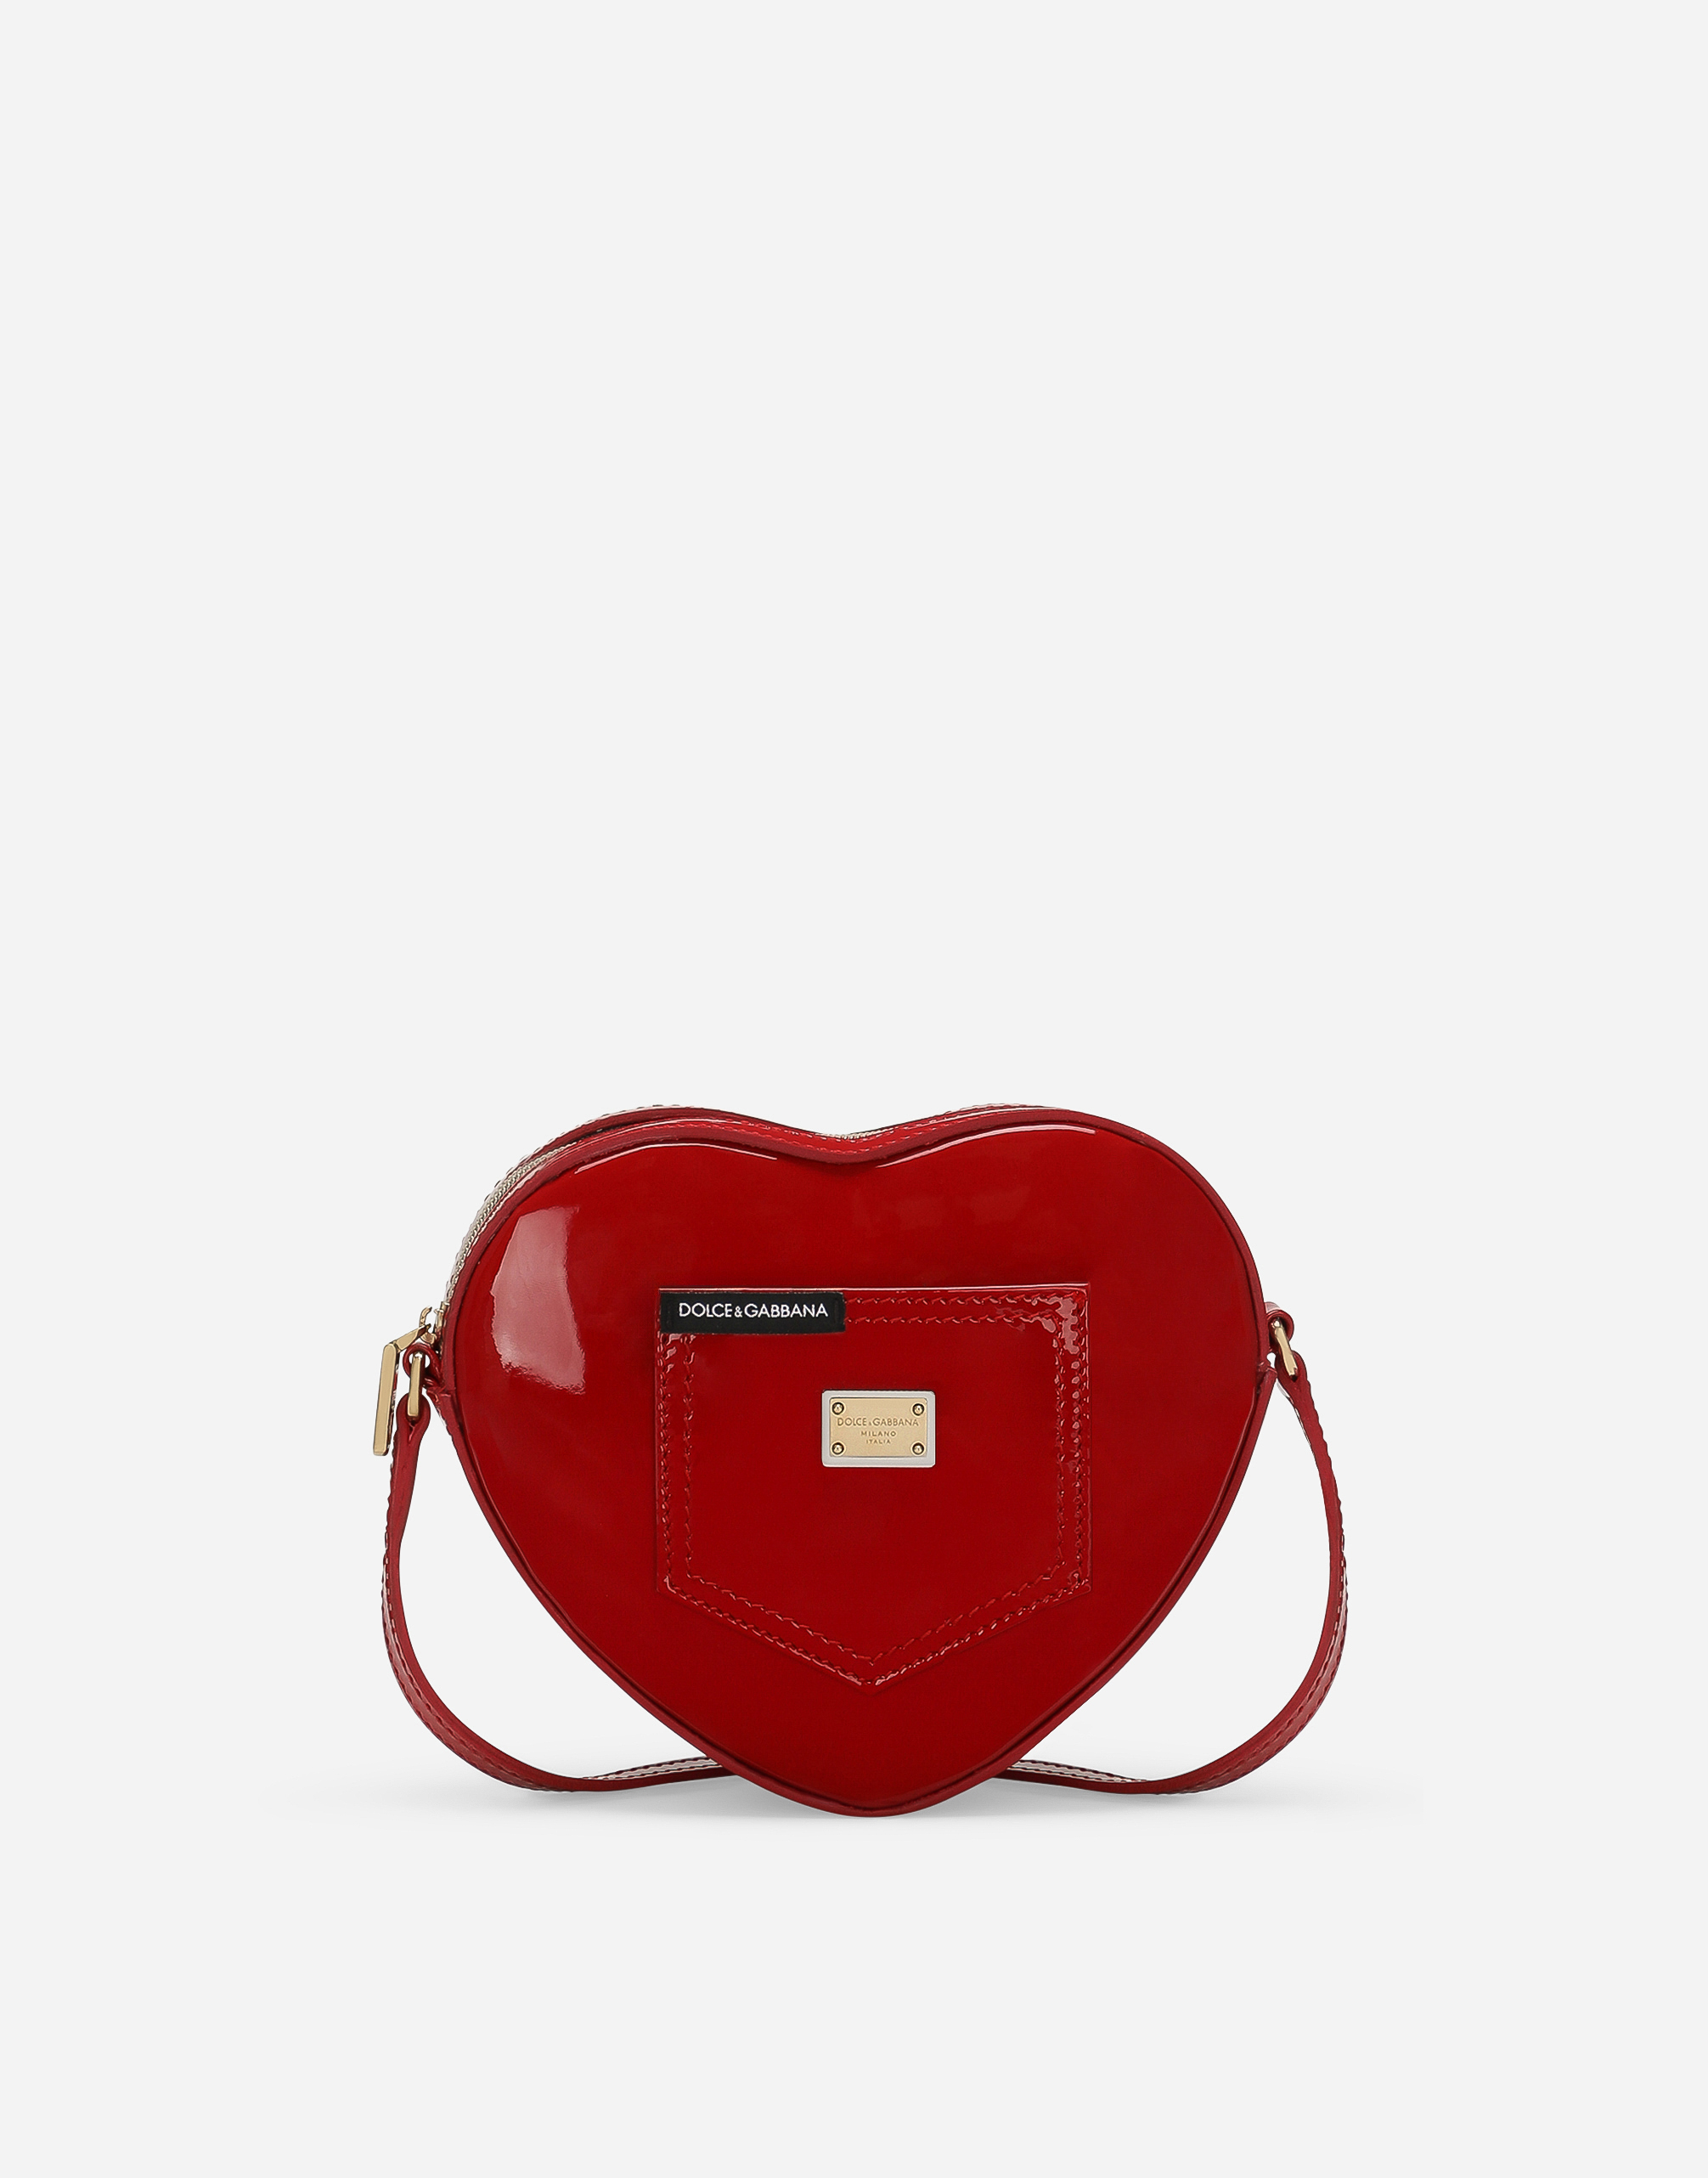 Dolce & Gabbana Dg Girlie Heart Bag In Red